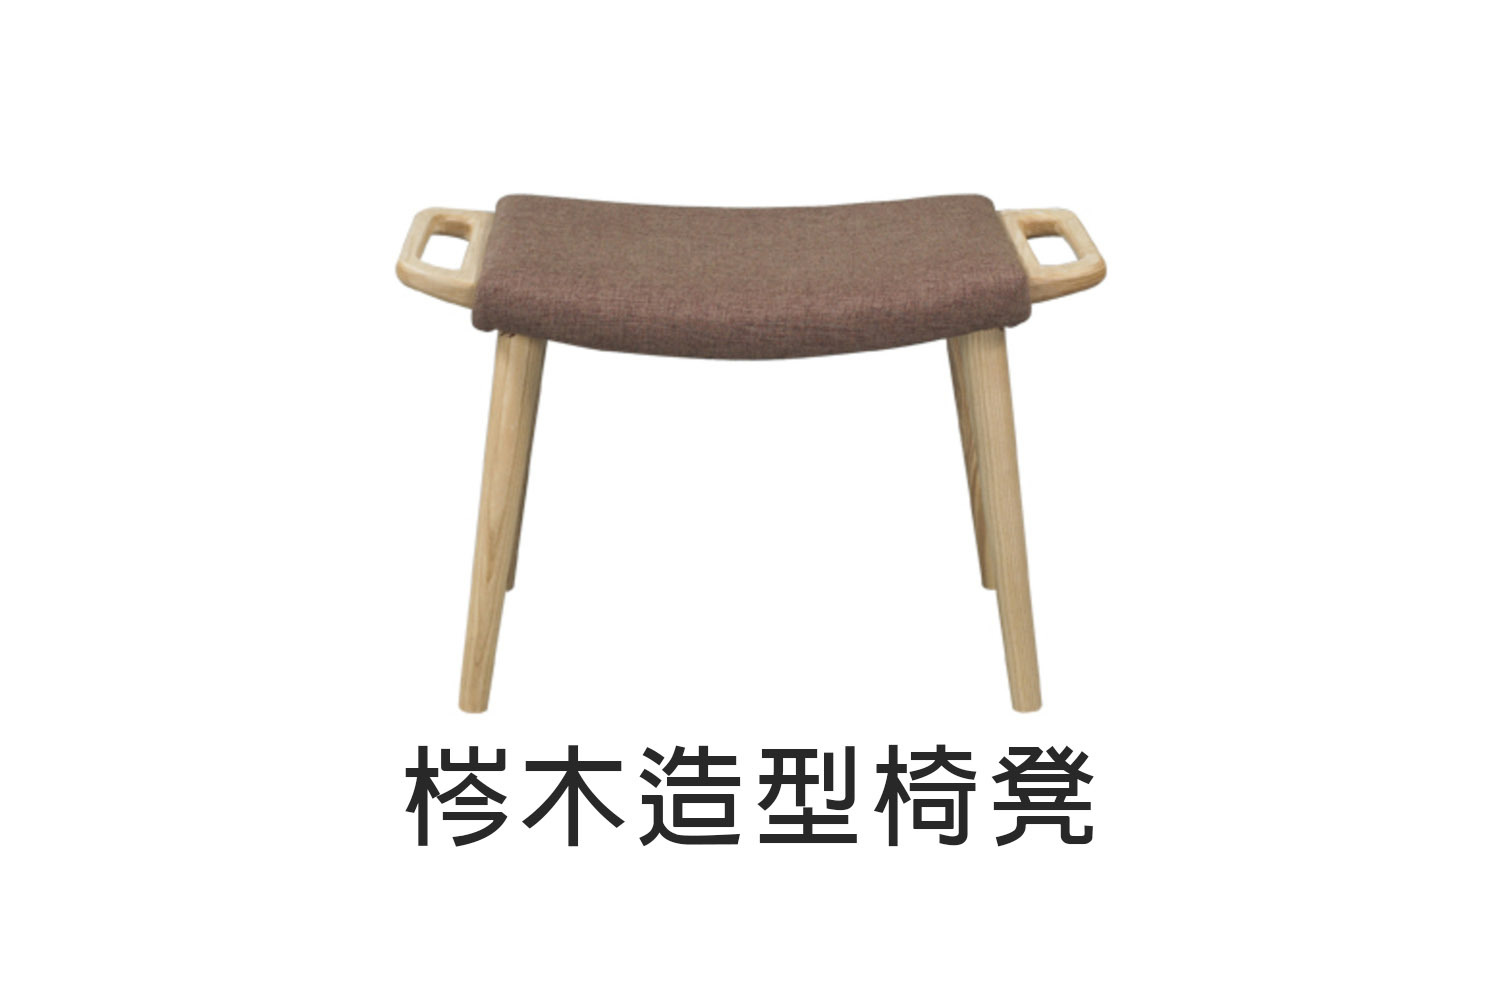 梣木造型椅凳 WRCH23R1